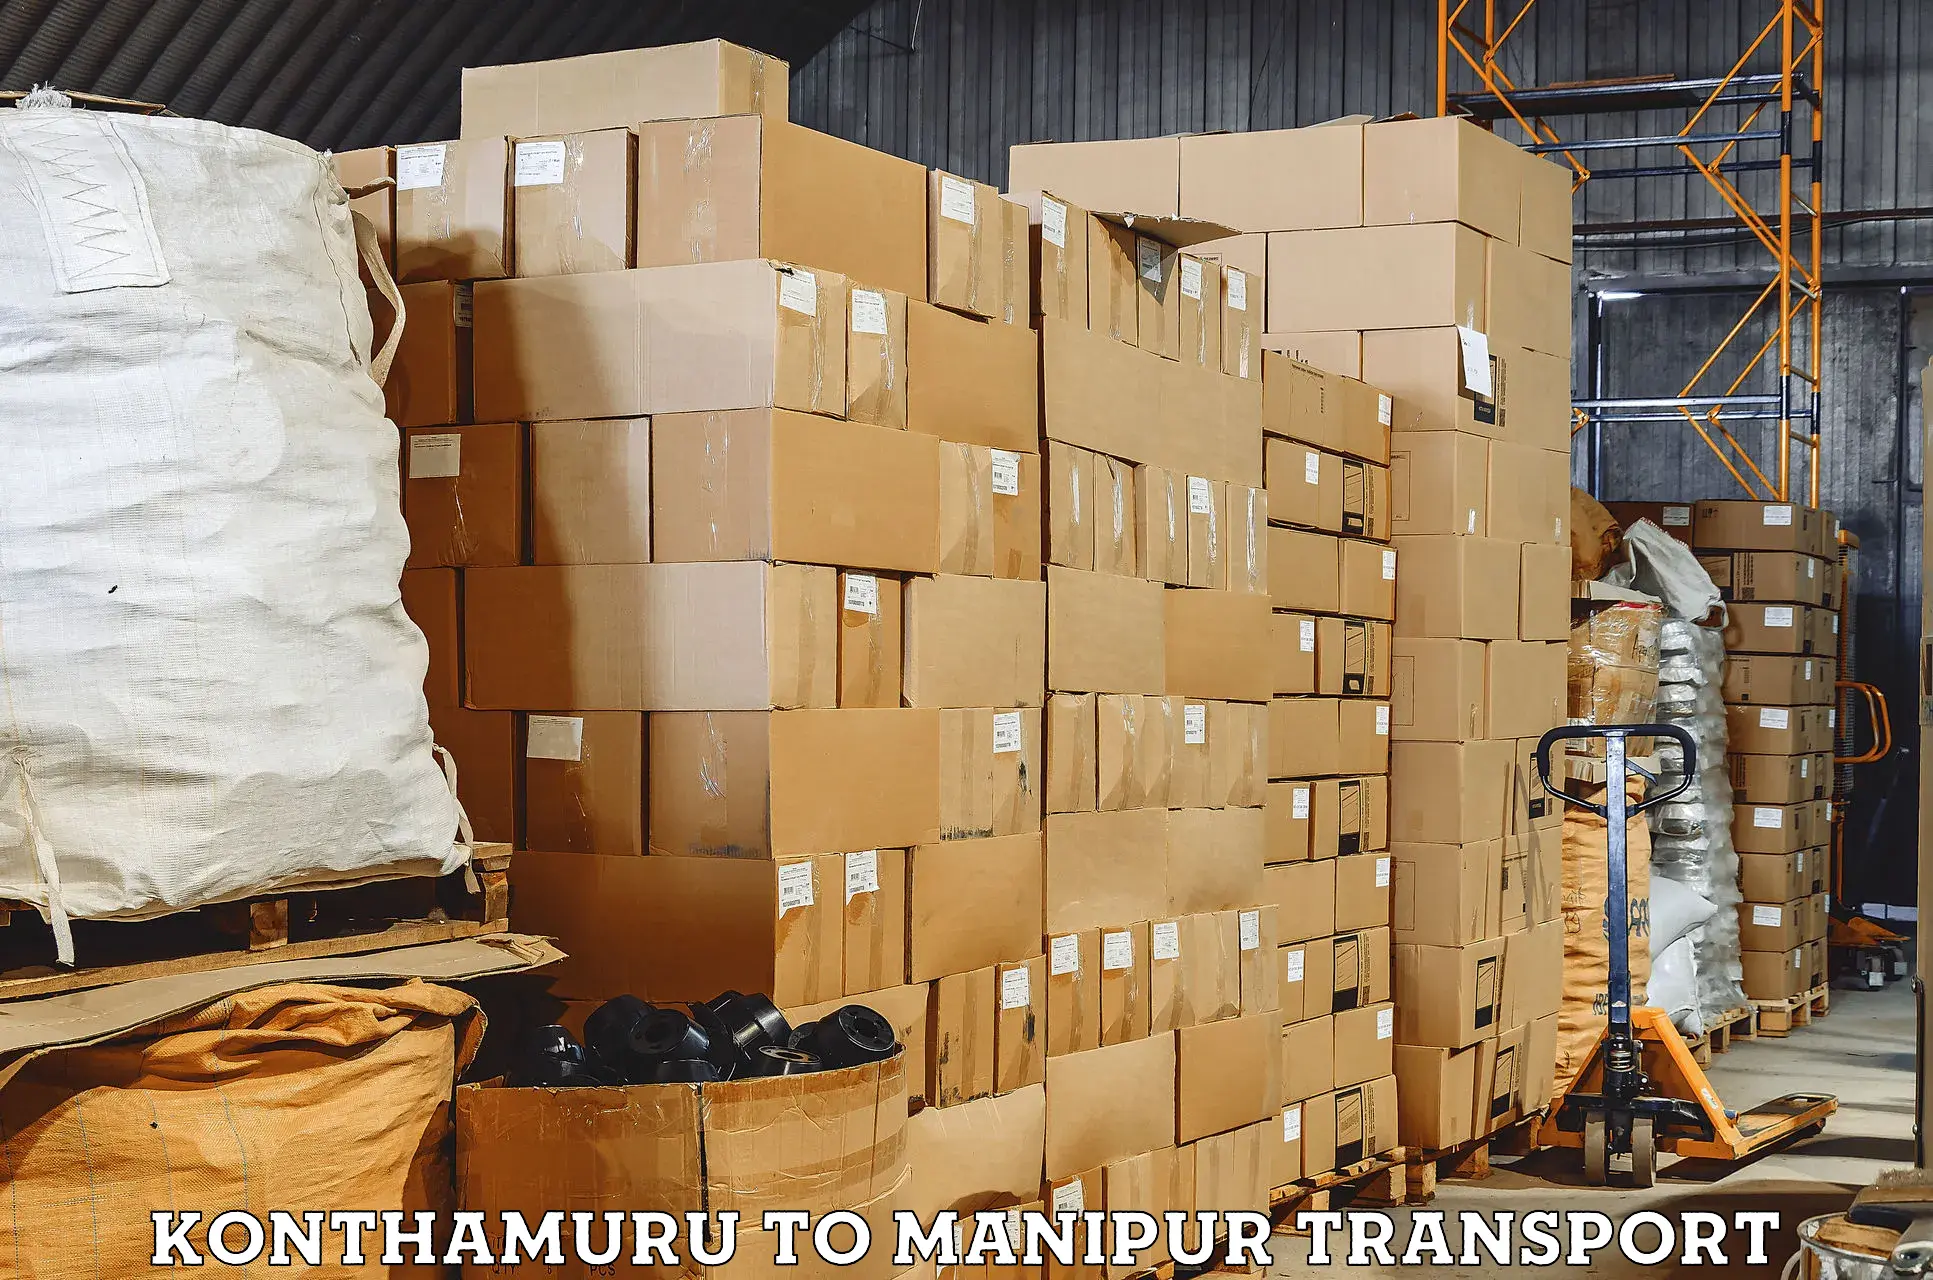 Vehicle transport services Konthamuru to Manipur